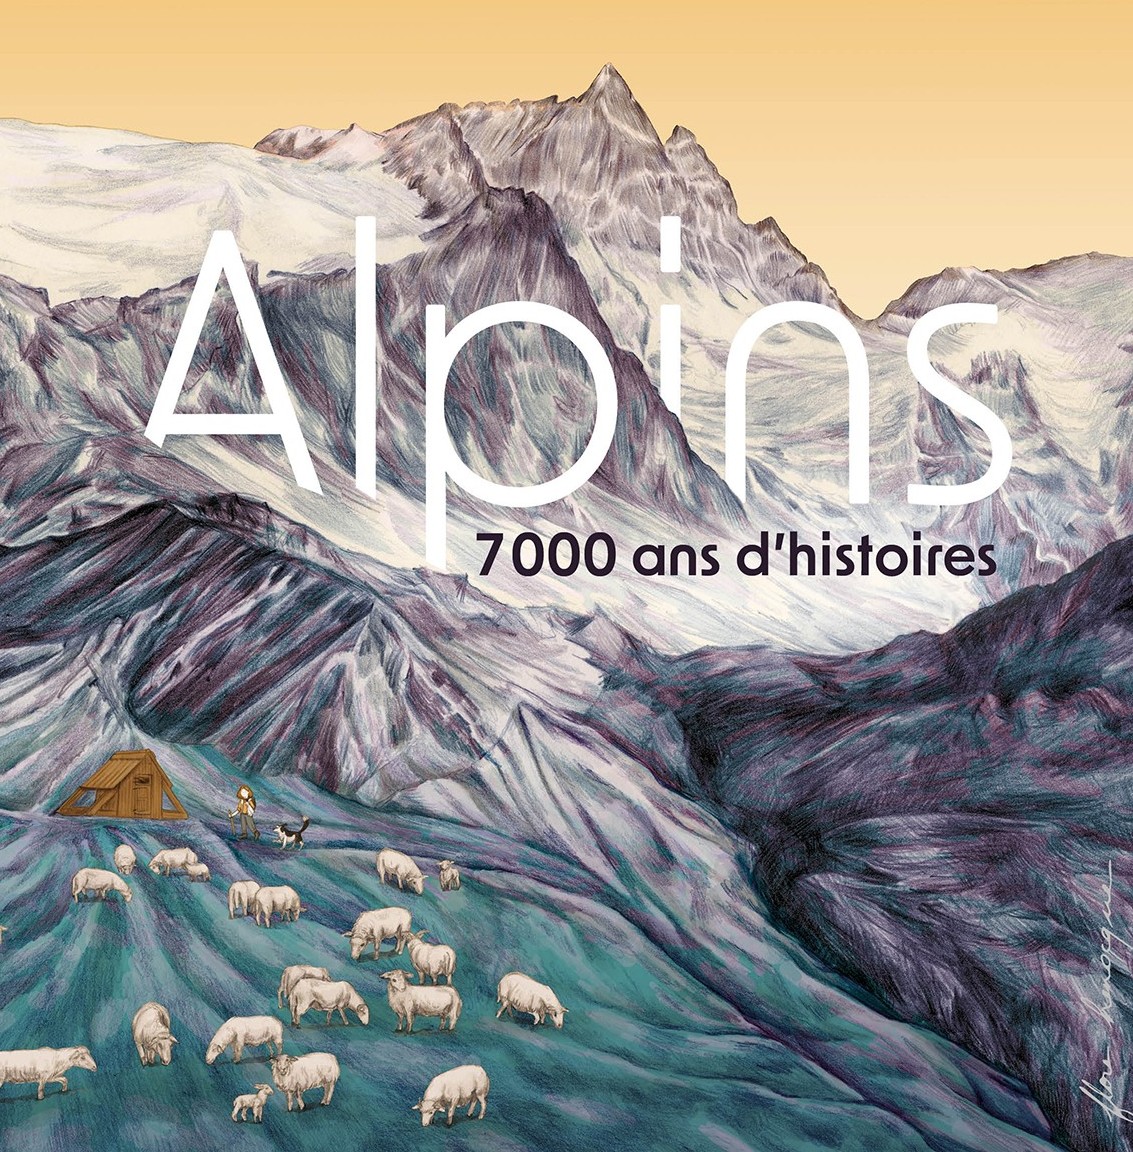 Les Alpes, les alpins et leurs histoires